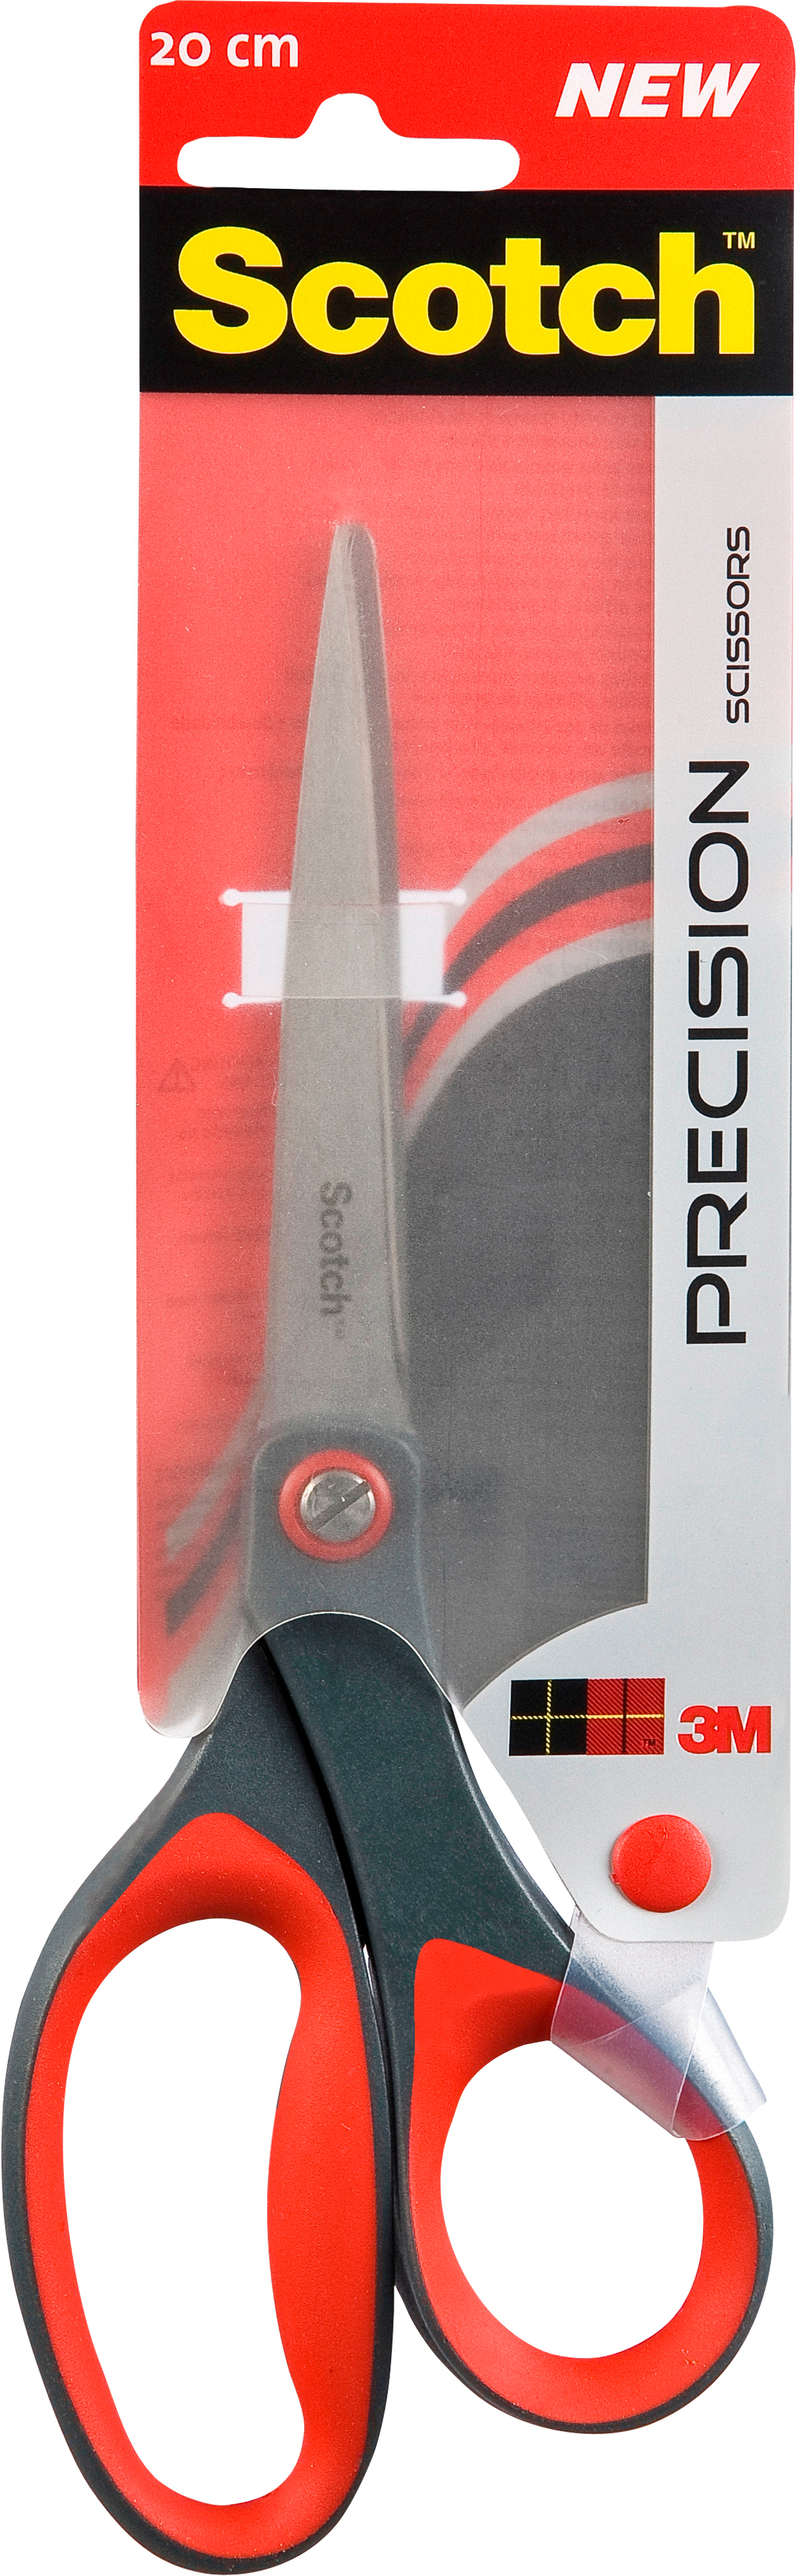 SCOTCH Precision ciseaux 1448 SOFTGRIP 20cm